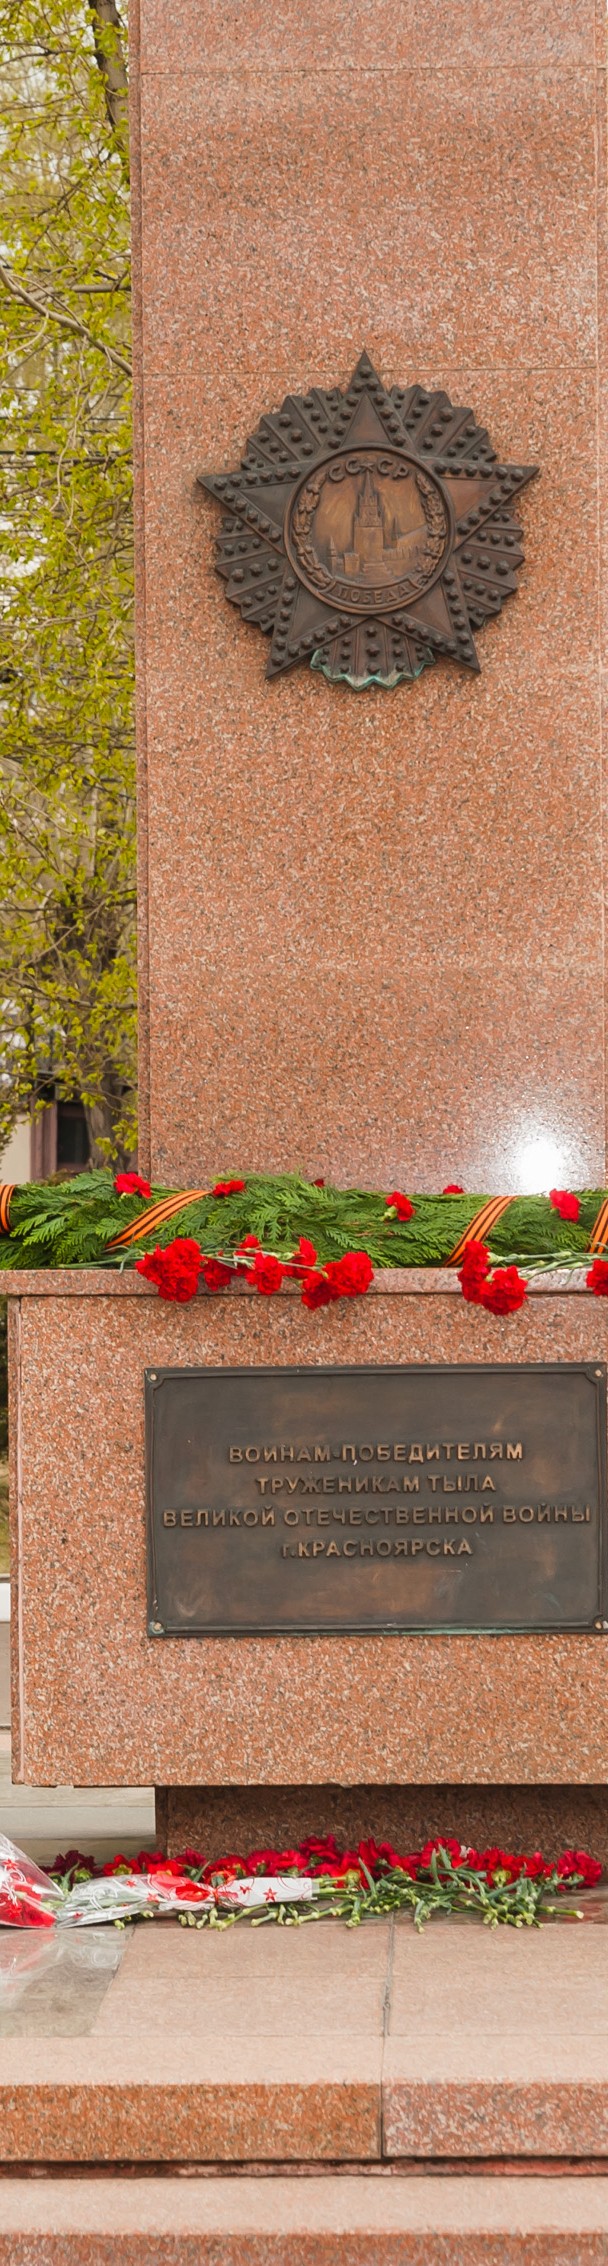 Возложения цветов как дань памяти и уважения погибшим защитникам Родины.